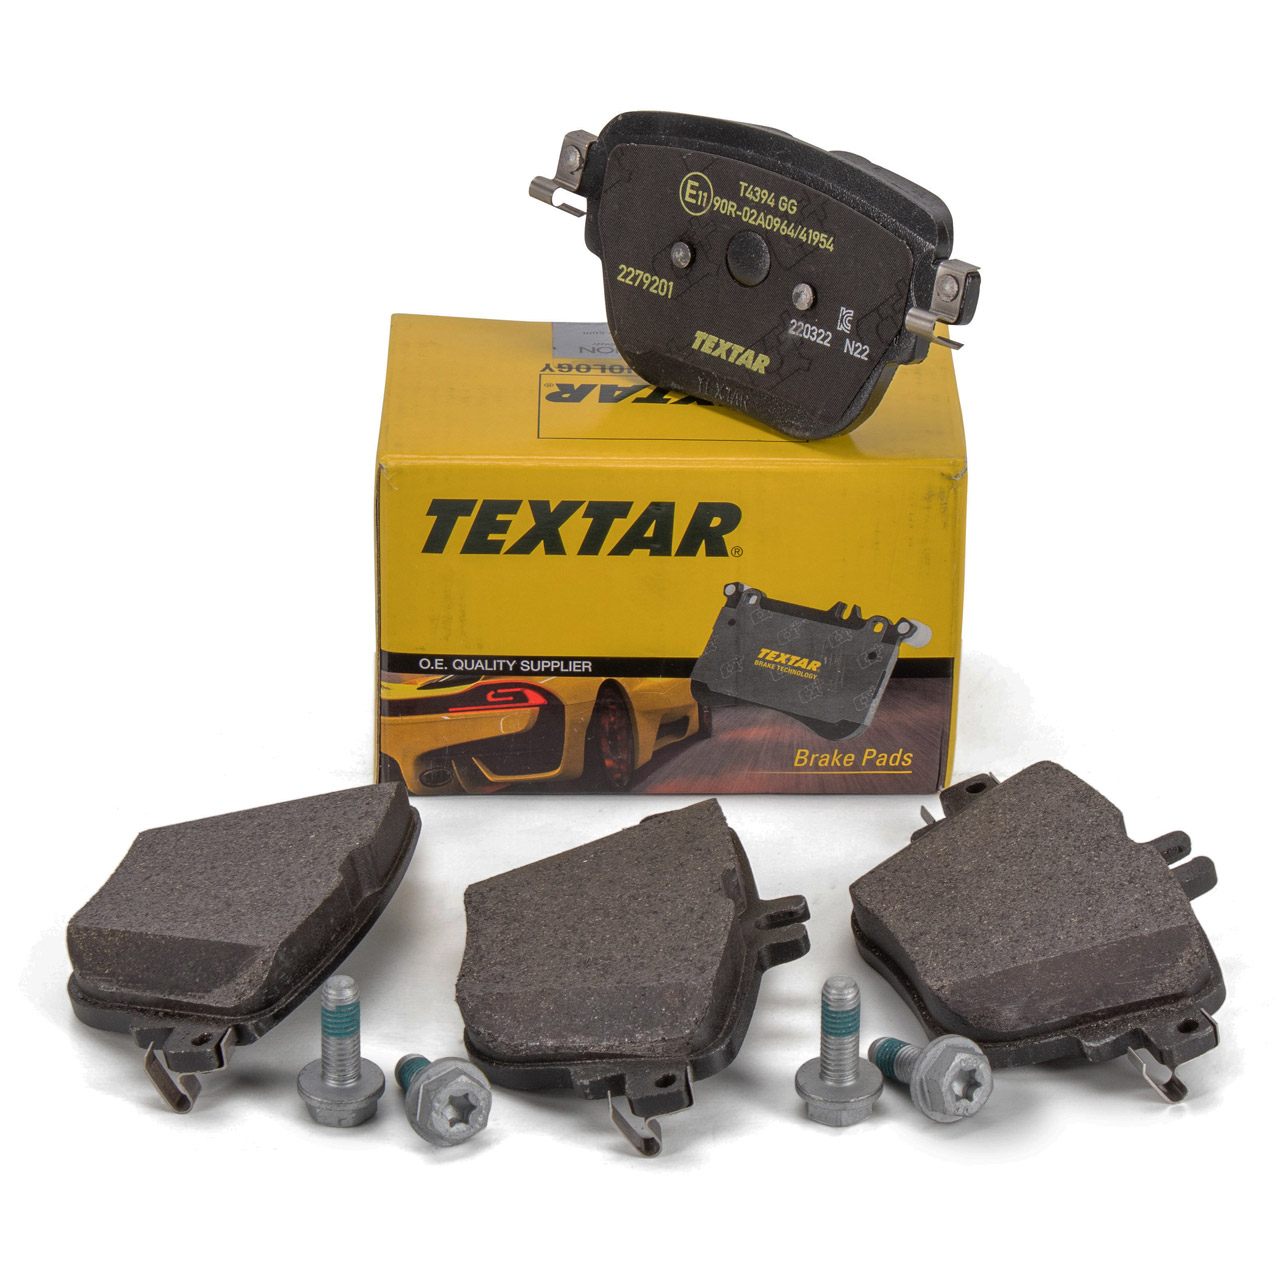 TEXTAR 2279201 Bremsbeläge MERCEDES E-Klasse W213 S213 A/C238 CLS C257 hinten 0004207903